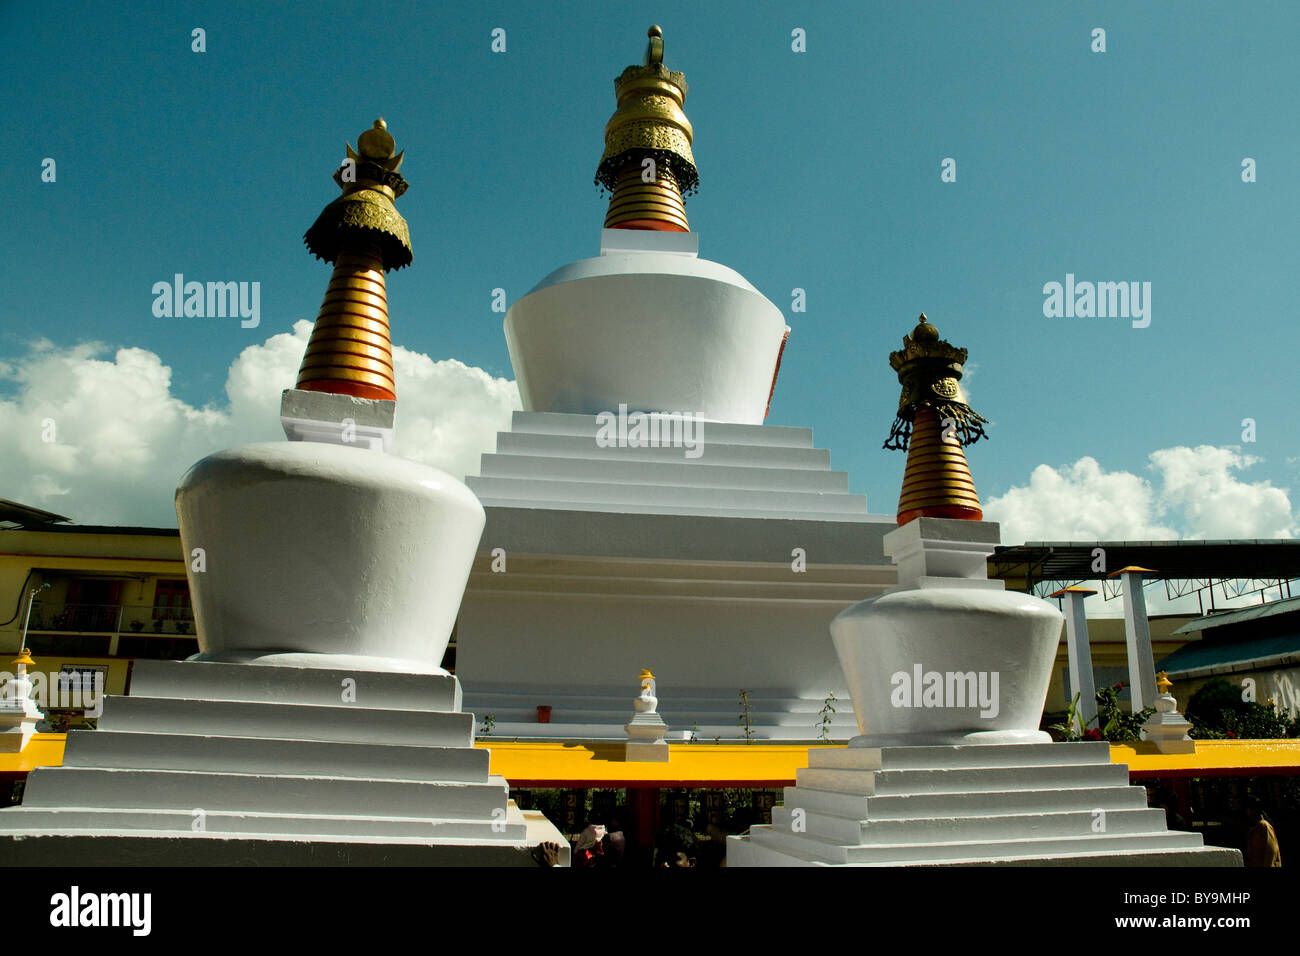 Grande, l'impressionnante n'Drui chortens au Sikkim (stupas en sanskrit) sont des objets de dévotion bouddhiste Banque D'Images